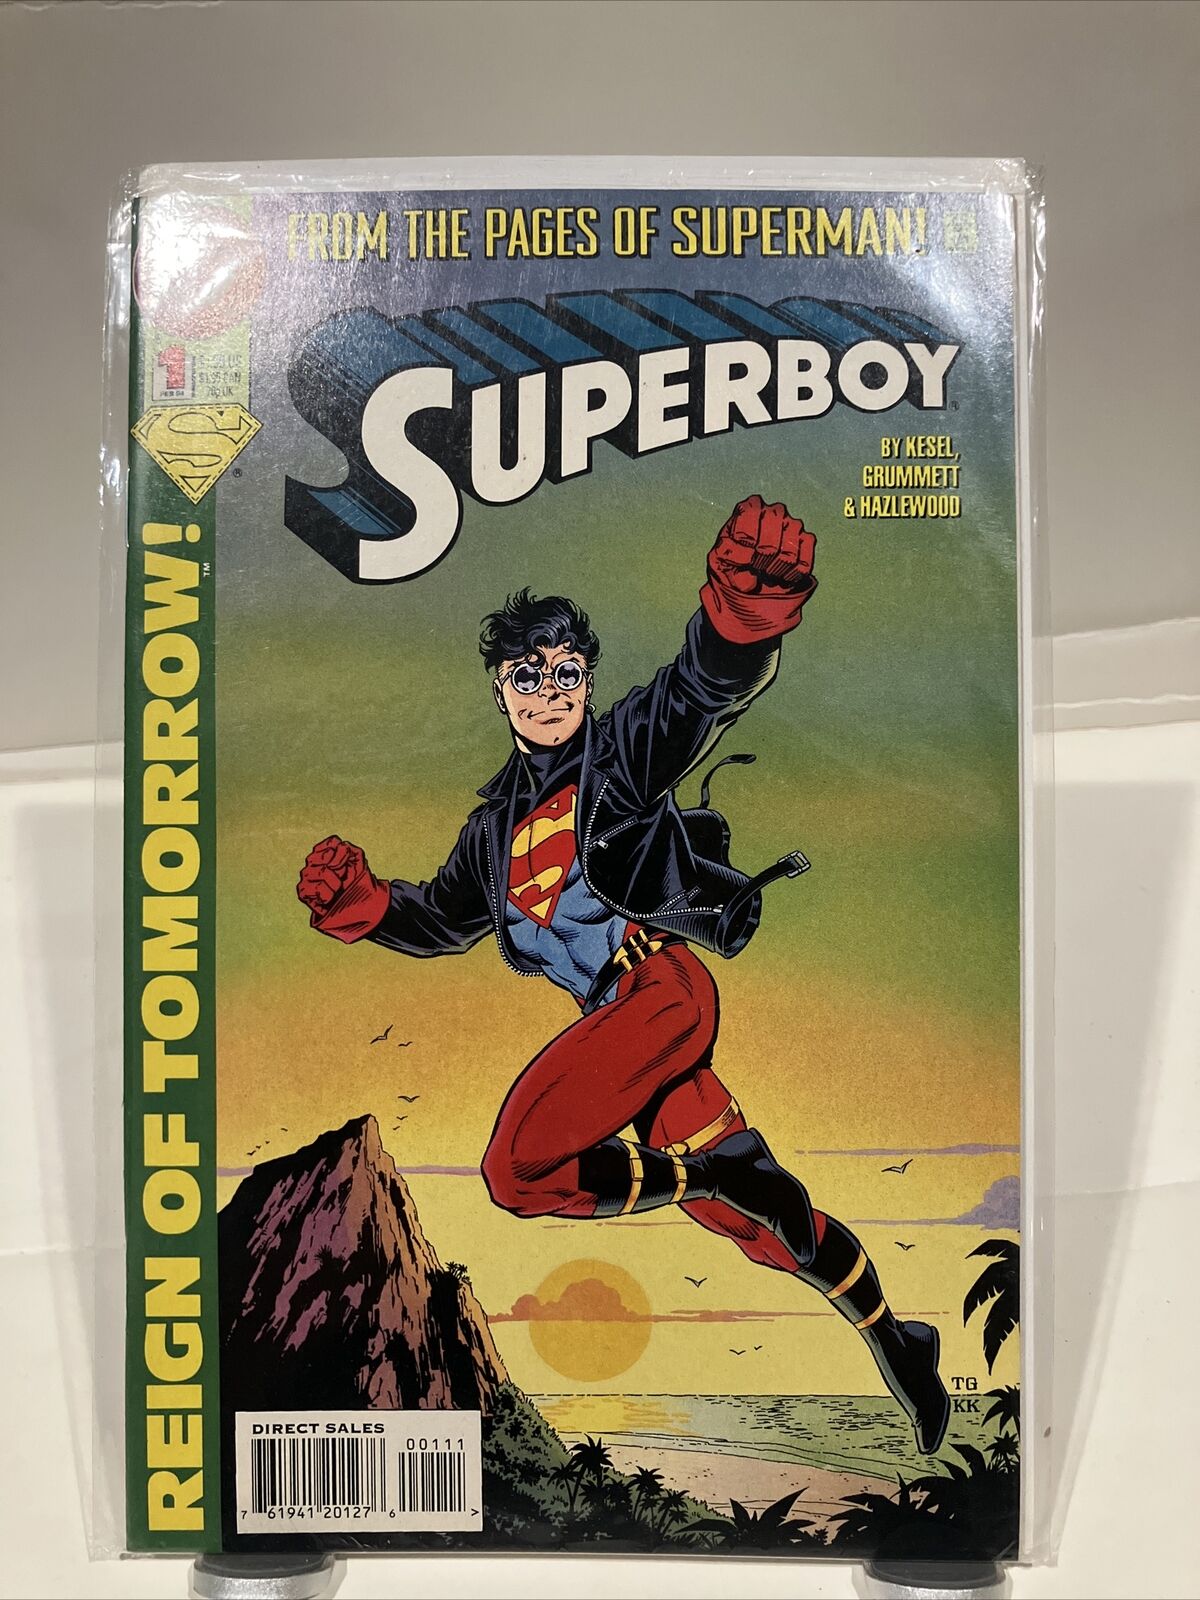 Superboy #1 (DC Comics, March 2018)